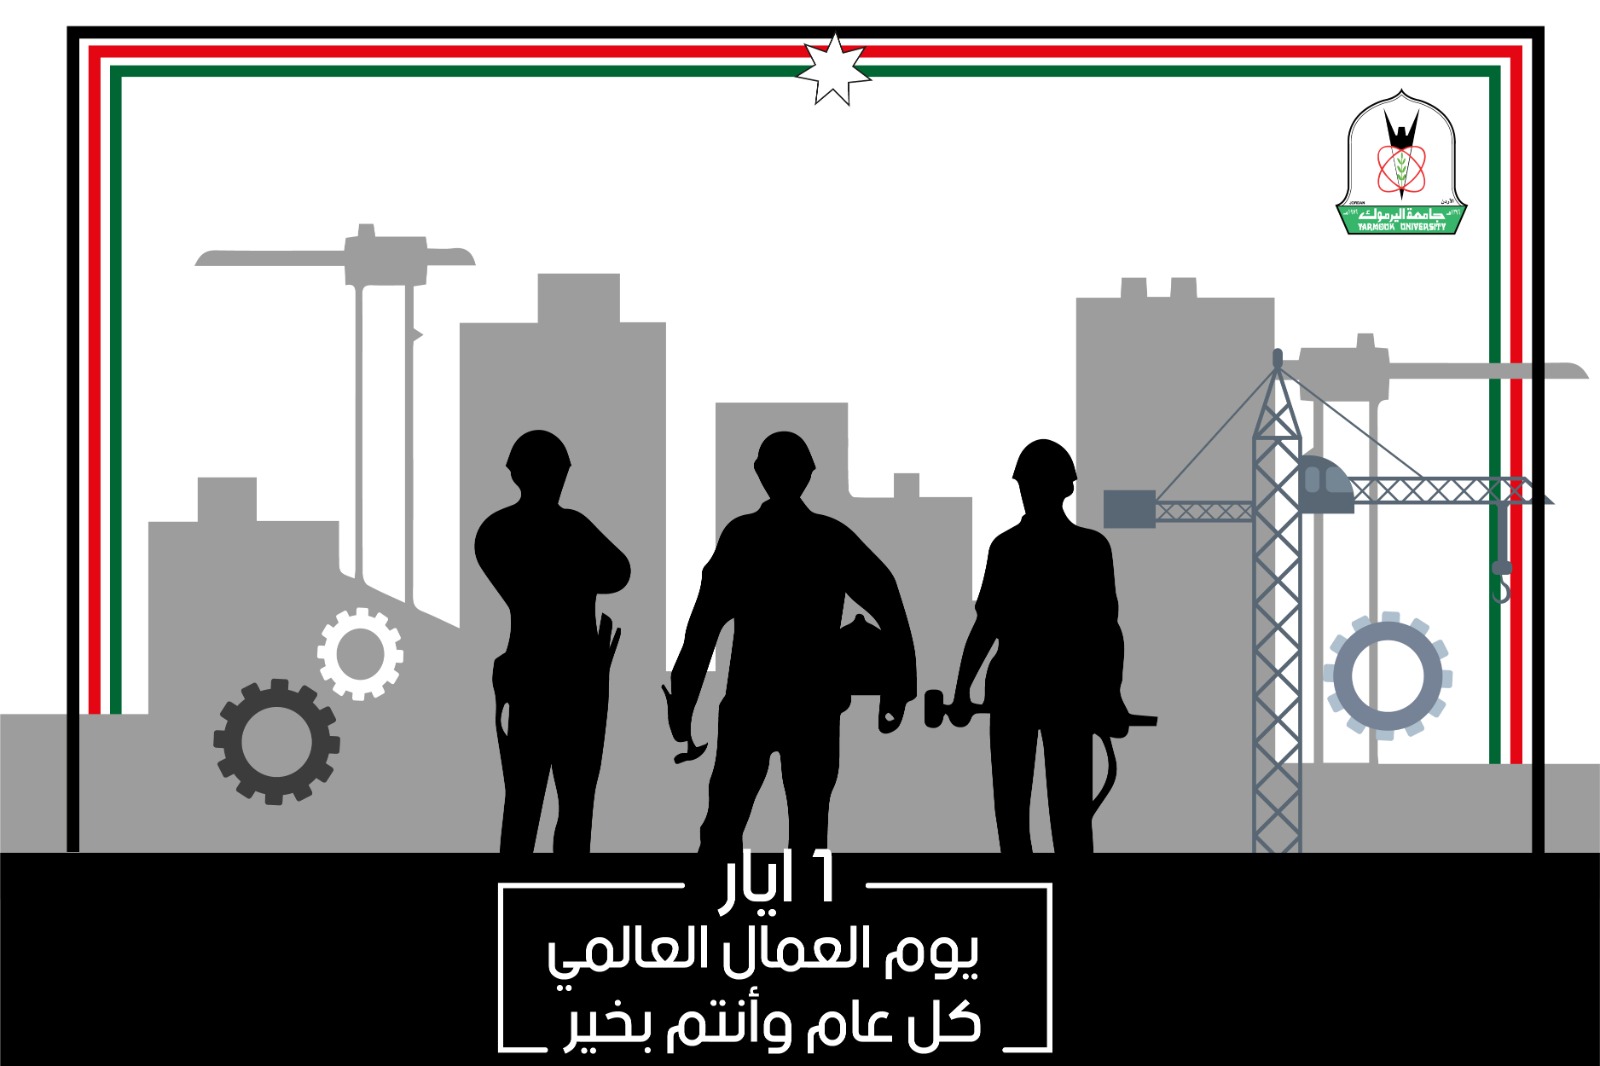 اليرموك: مسّاد يوجه رسالة تهنئة بمناسبة يوم العمال العالمي 